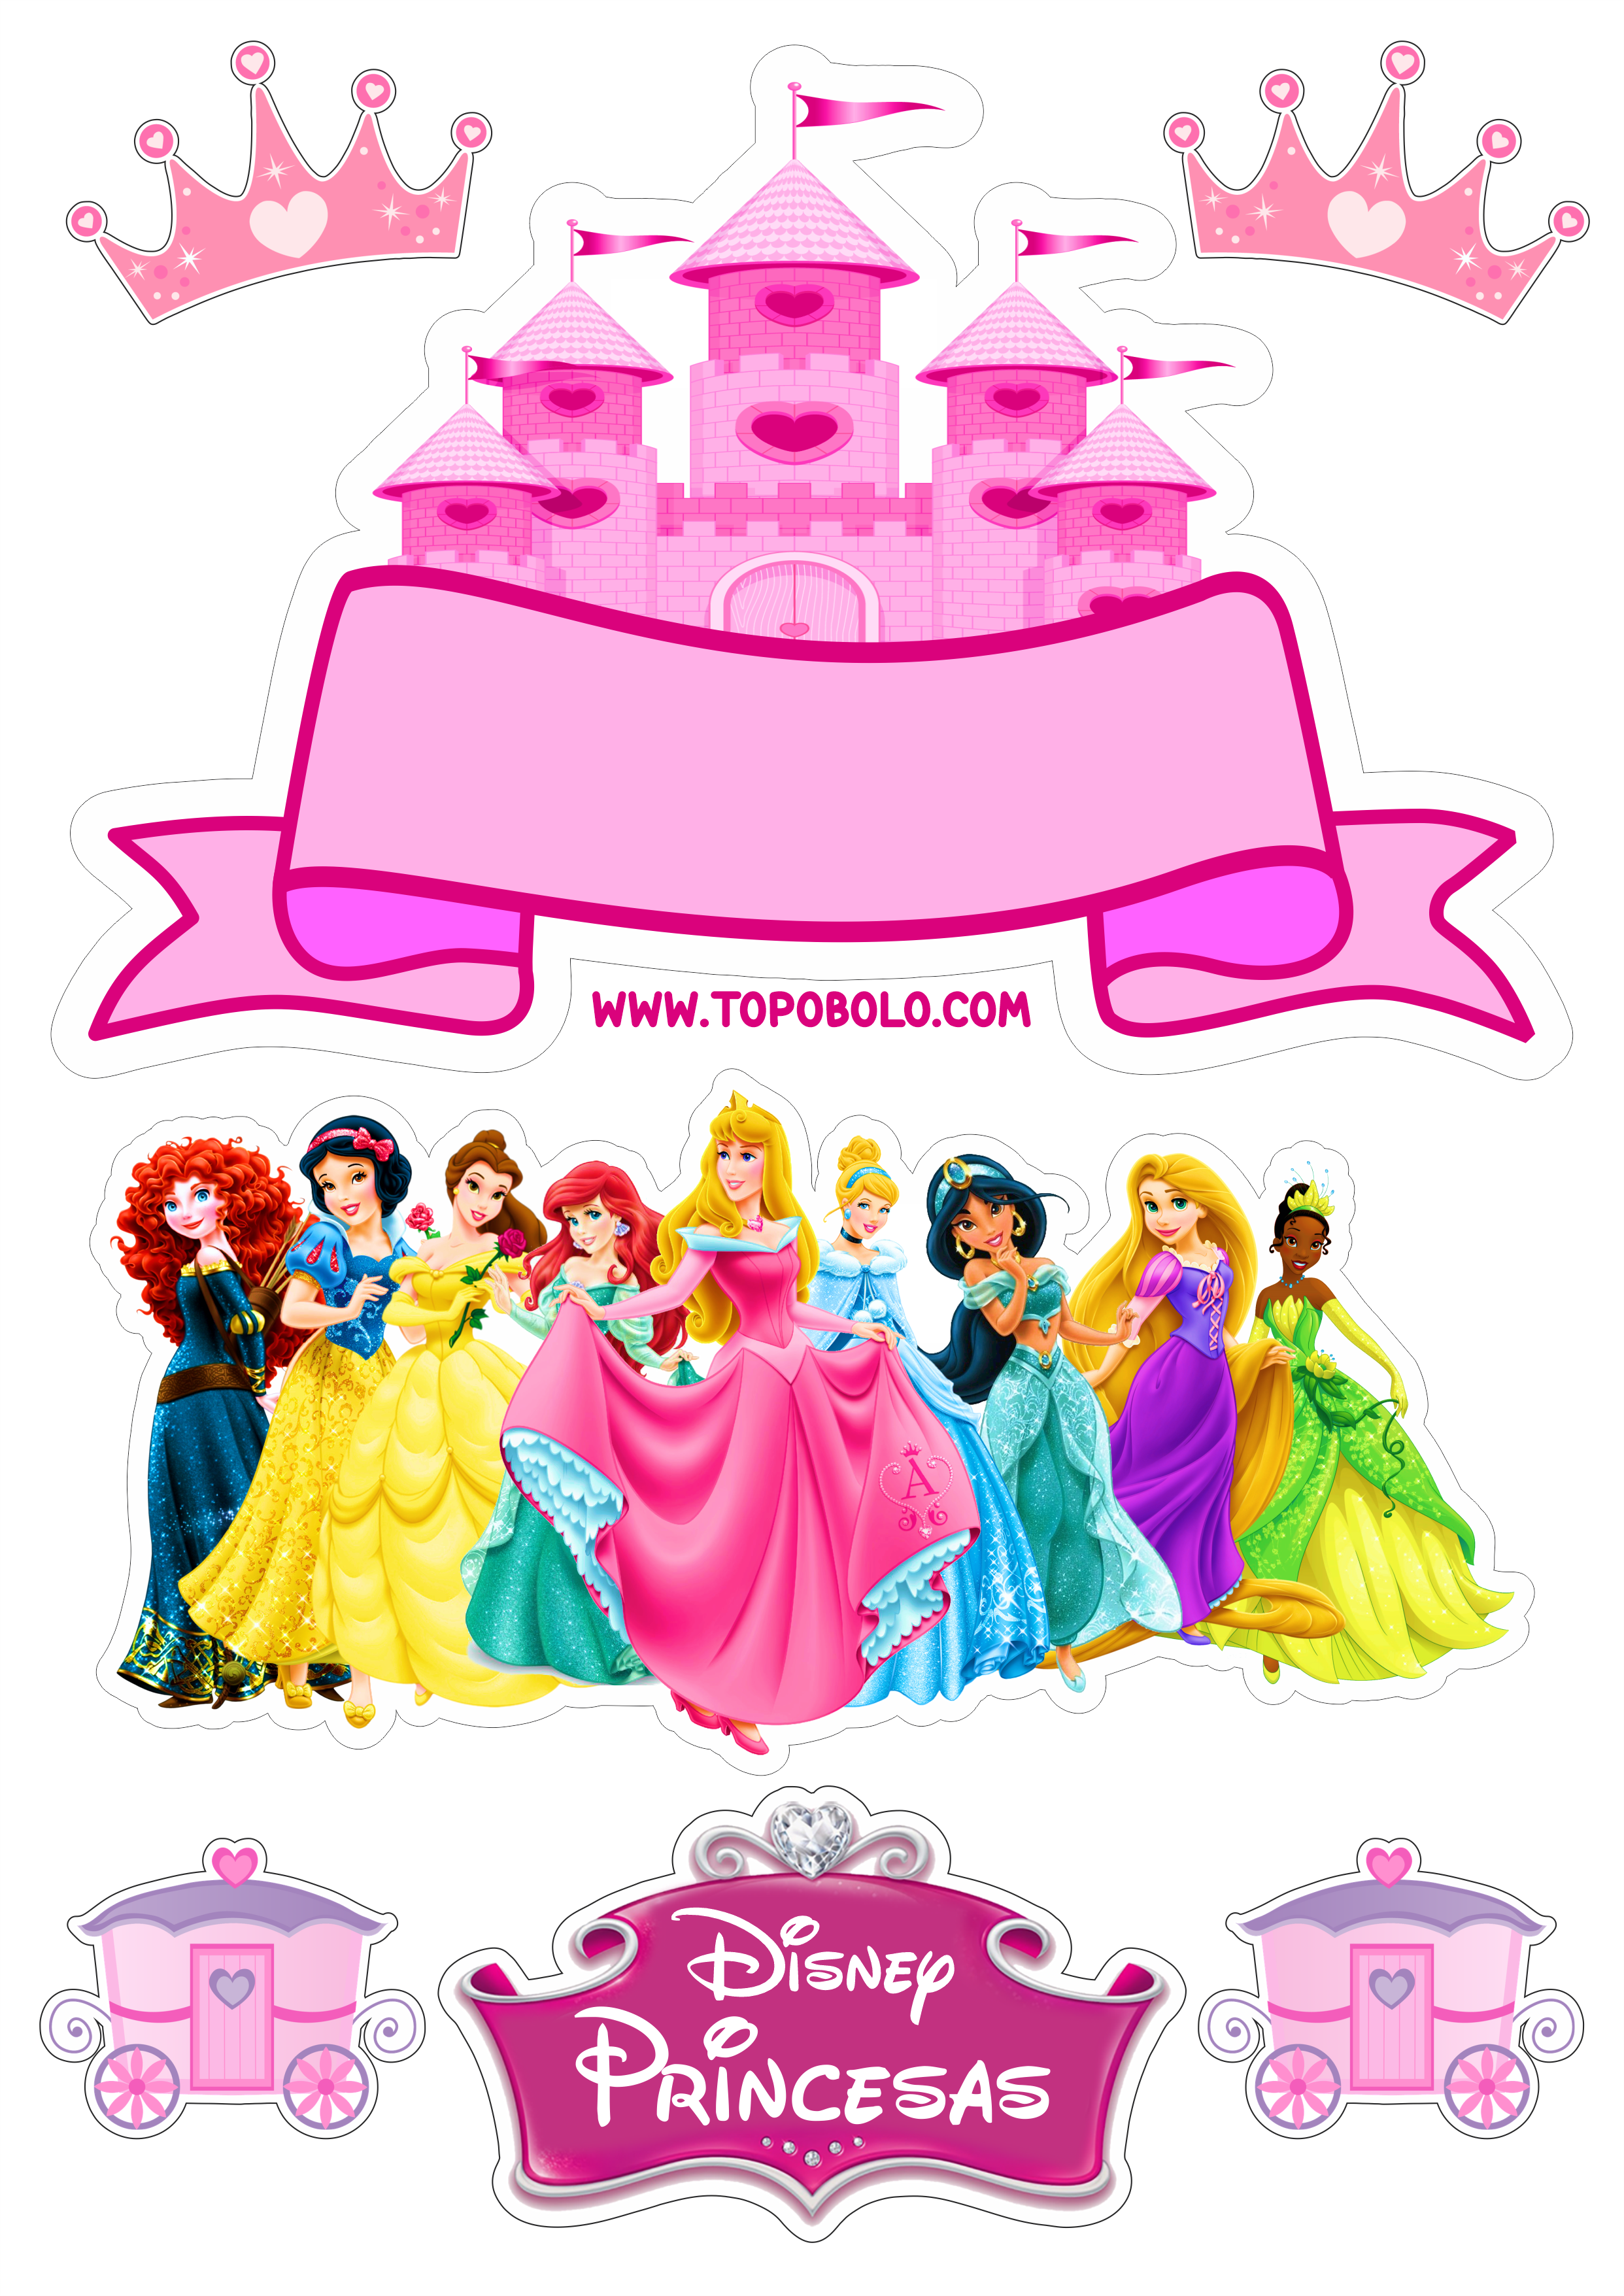 Topo de bolo princesas disney baby decoração de festa infantil pronto para imprimir papelaria criativa png